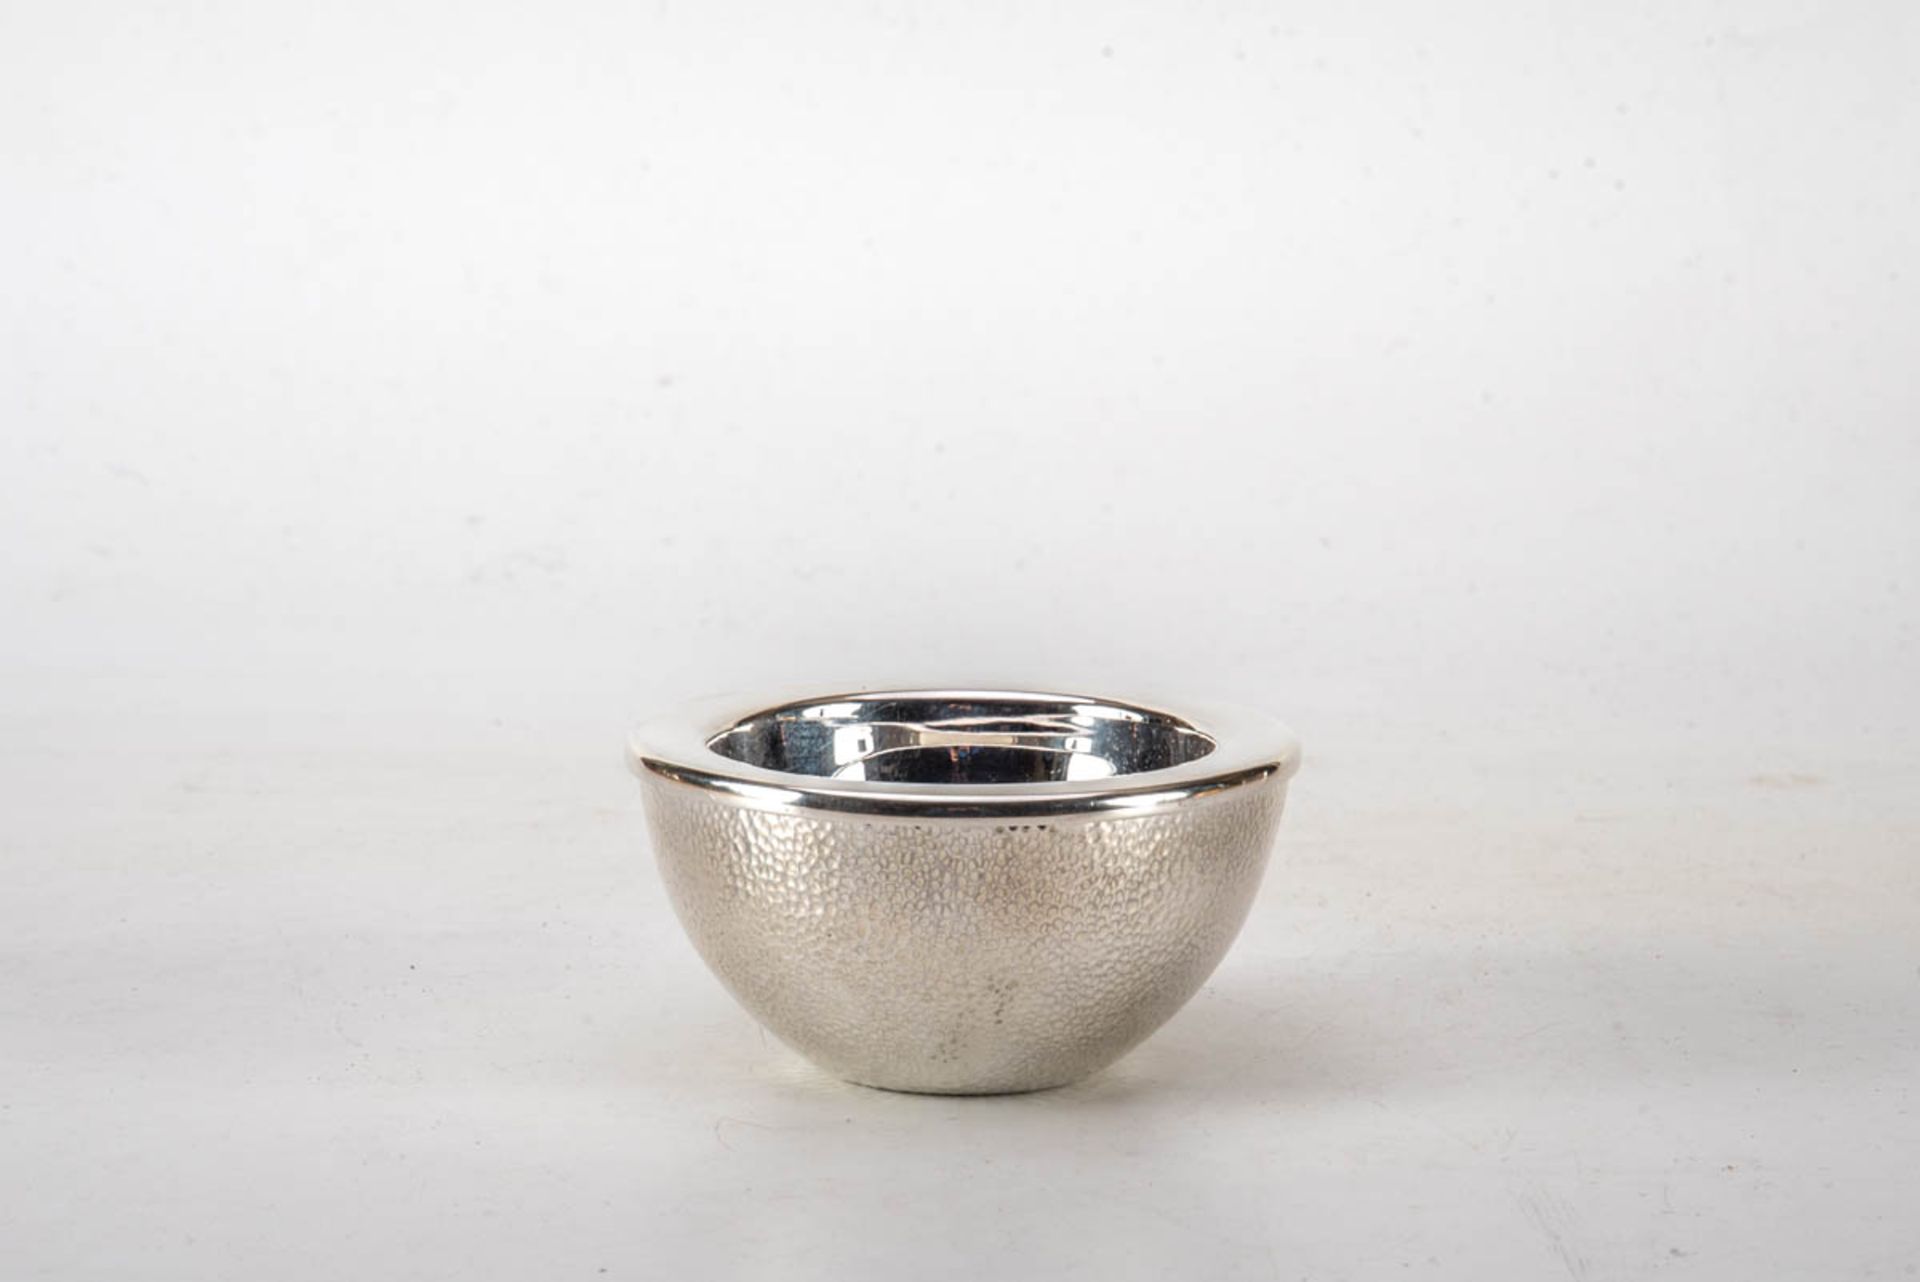 Kaviarschale925er Silber, runde Form Wandung martelliert, aufschraubbar zum einfüllen von Eis (